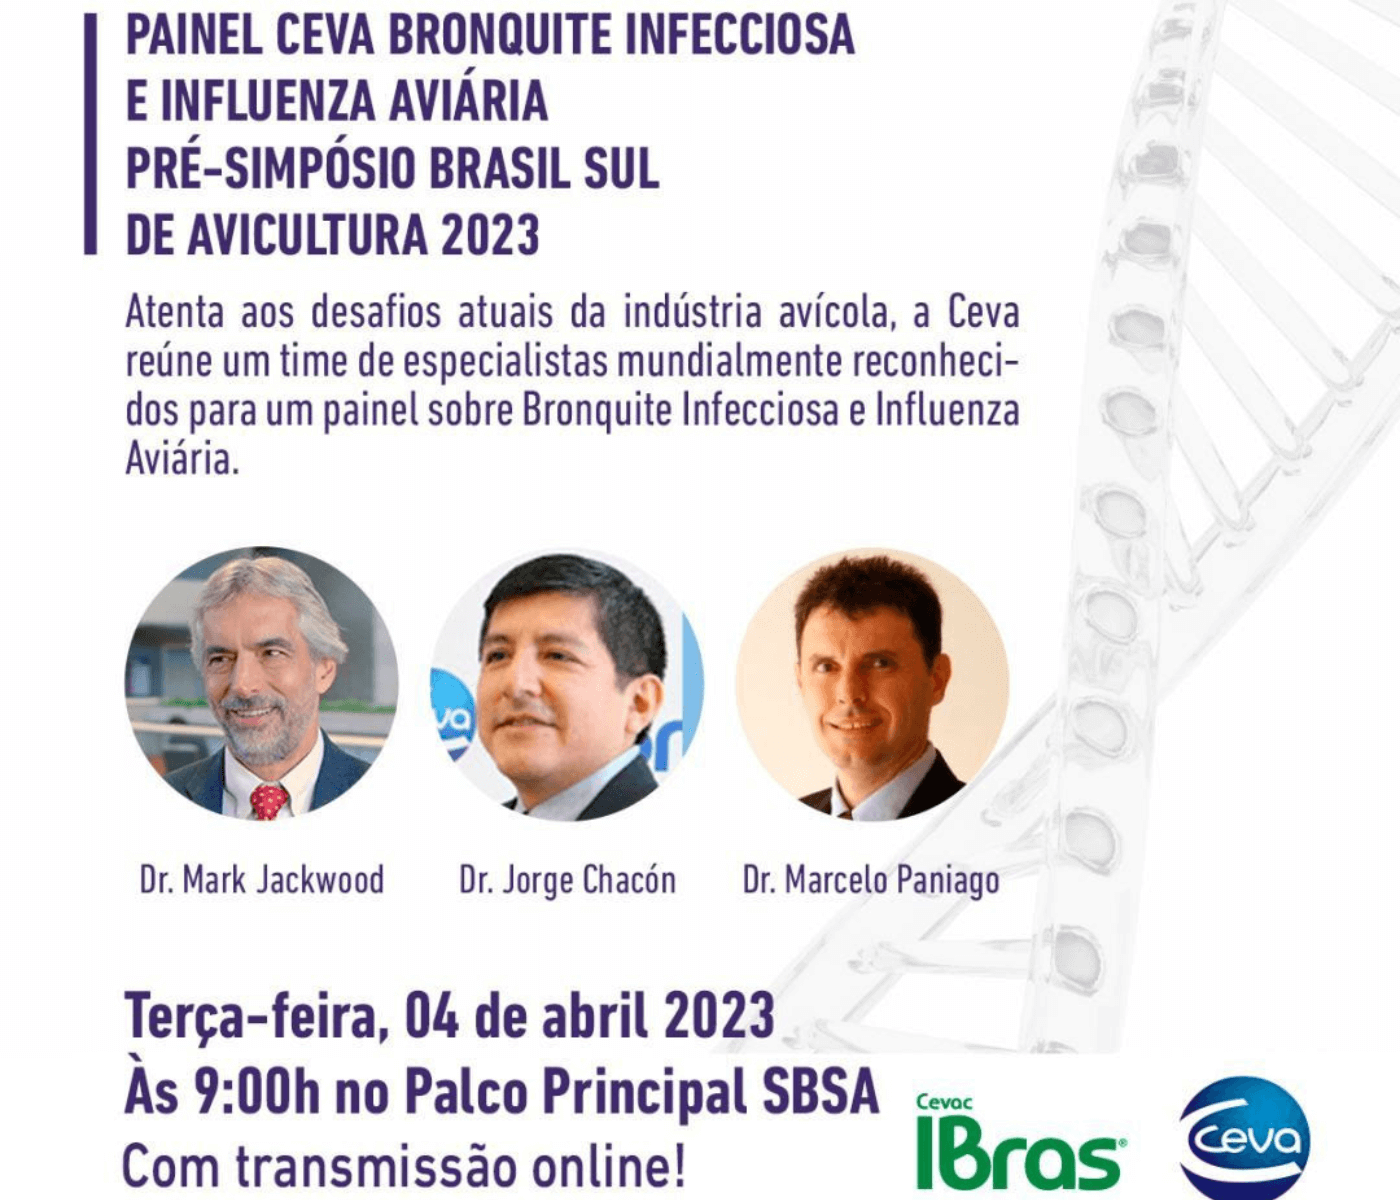 Bronquite Infecciosa e Influenza Aviária serão temas do Painel CEVA Pré-Simpósio Brasil Sul de Avicultura 2023